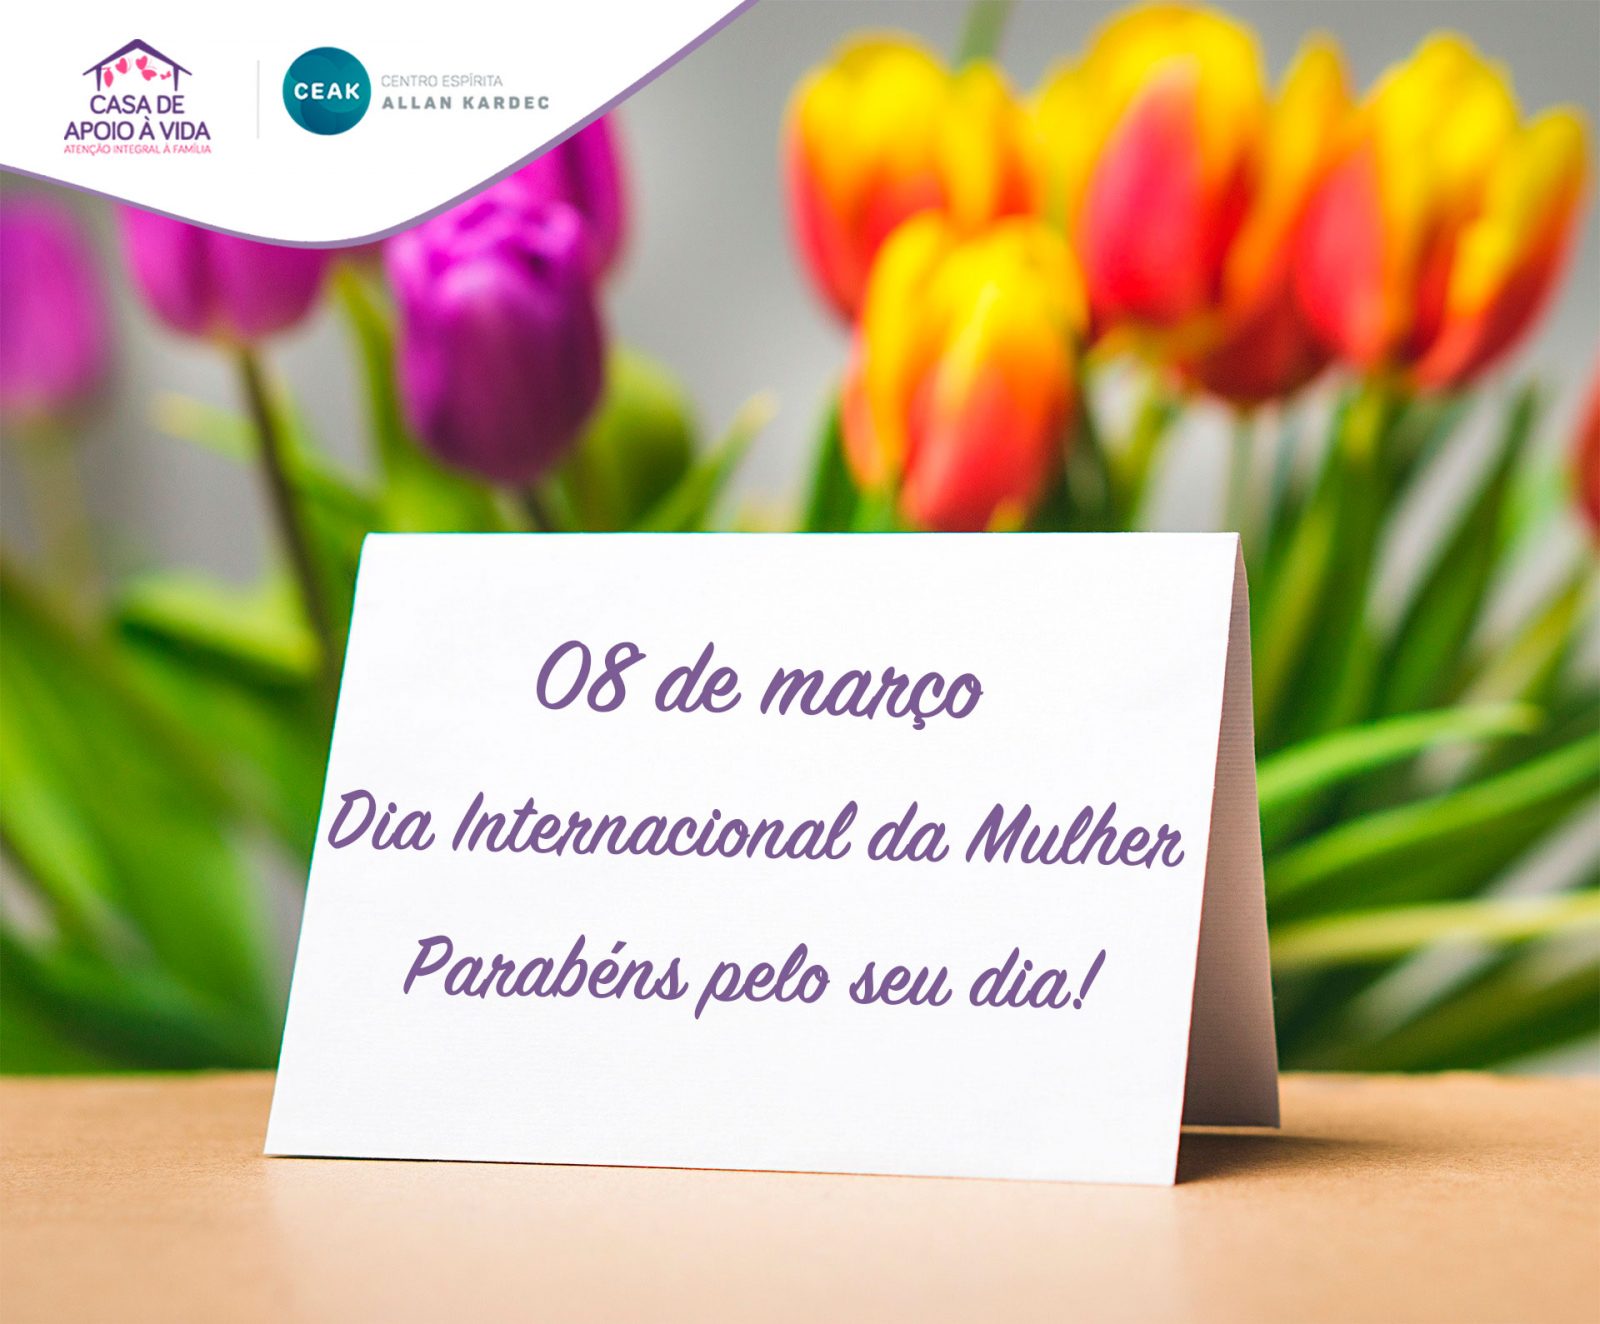 08 de março: Dia Internacional da Mulher - Instituto Todos os Cantos